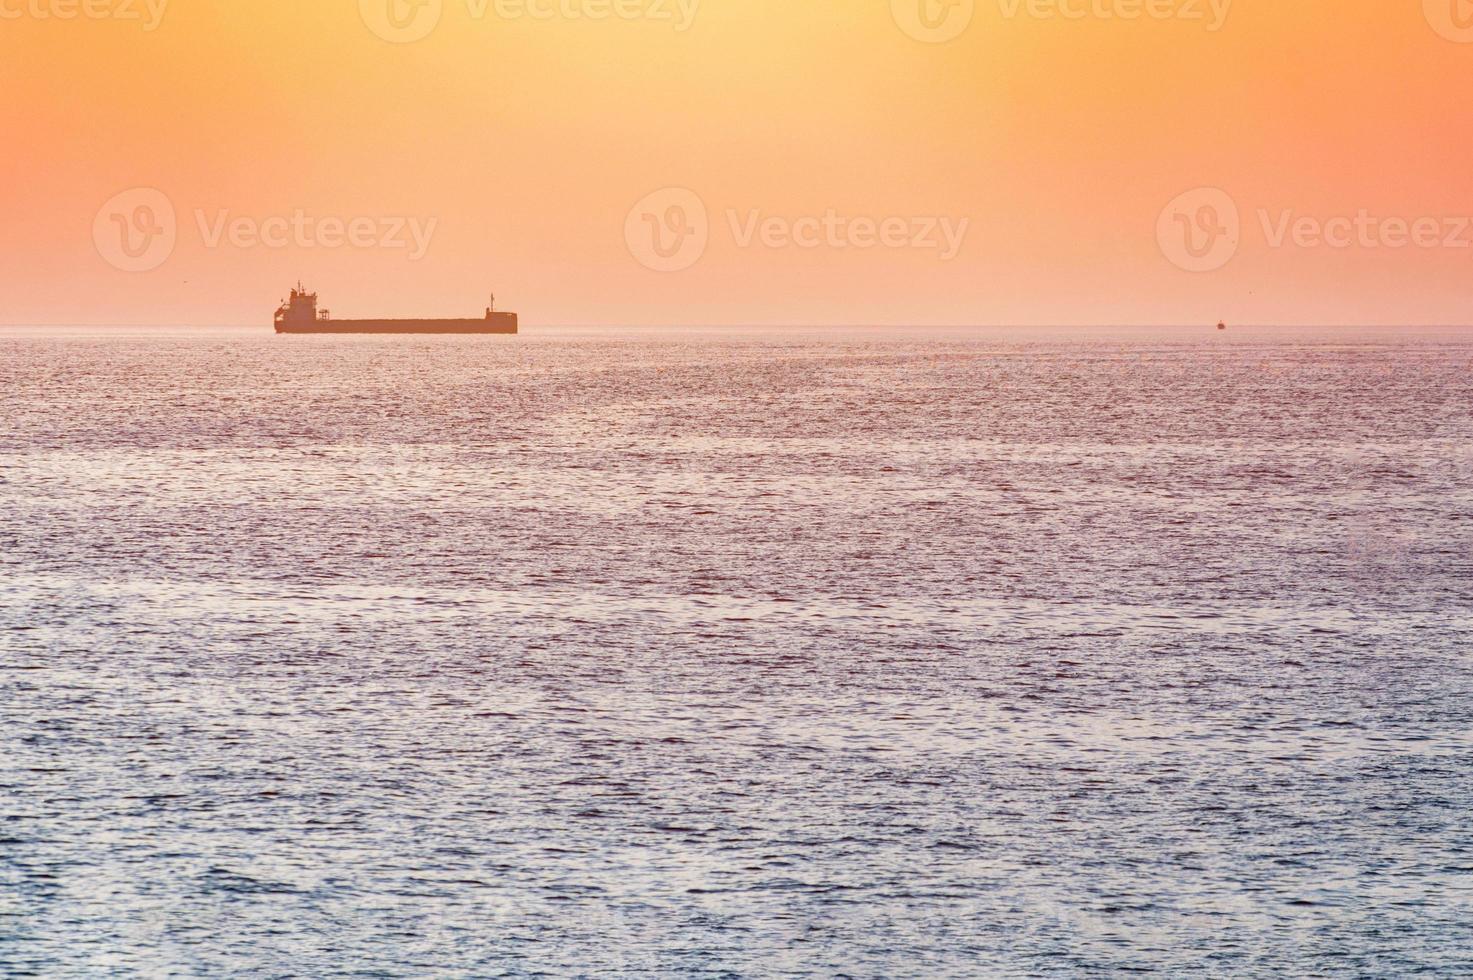 petit remorqueur et grand cargo. beau coucher de soleil sur la mer. vue de voyage à couper le souffle, espace de copie. photo